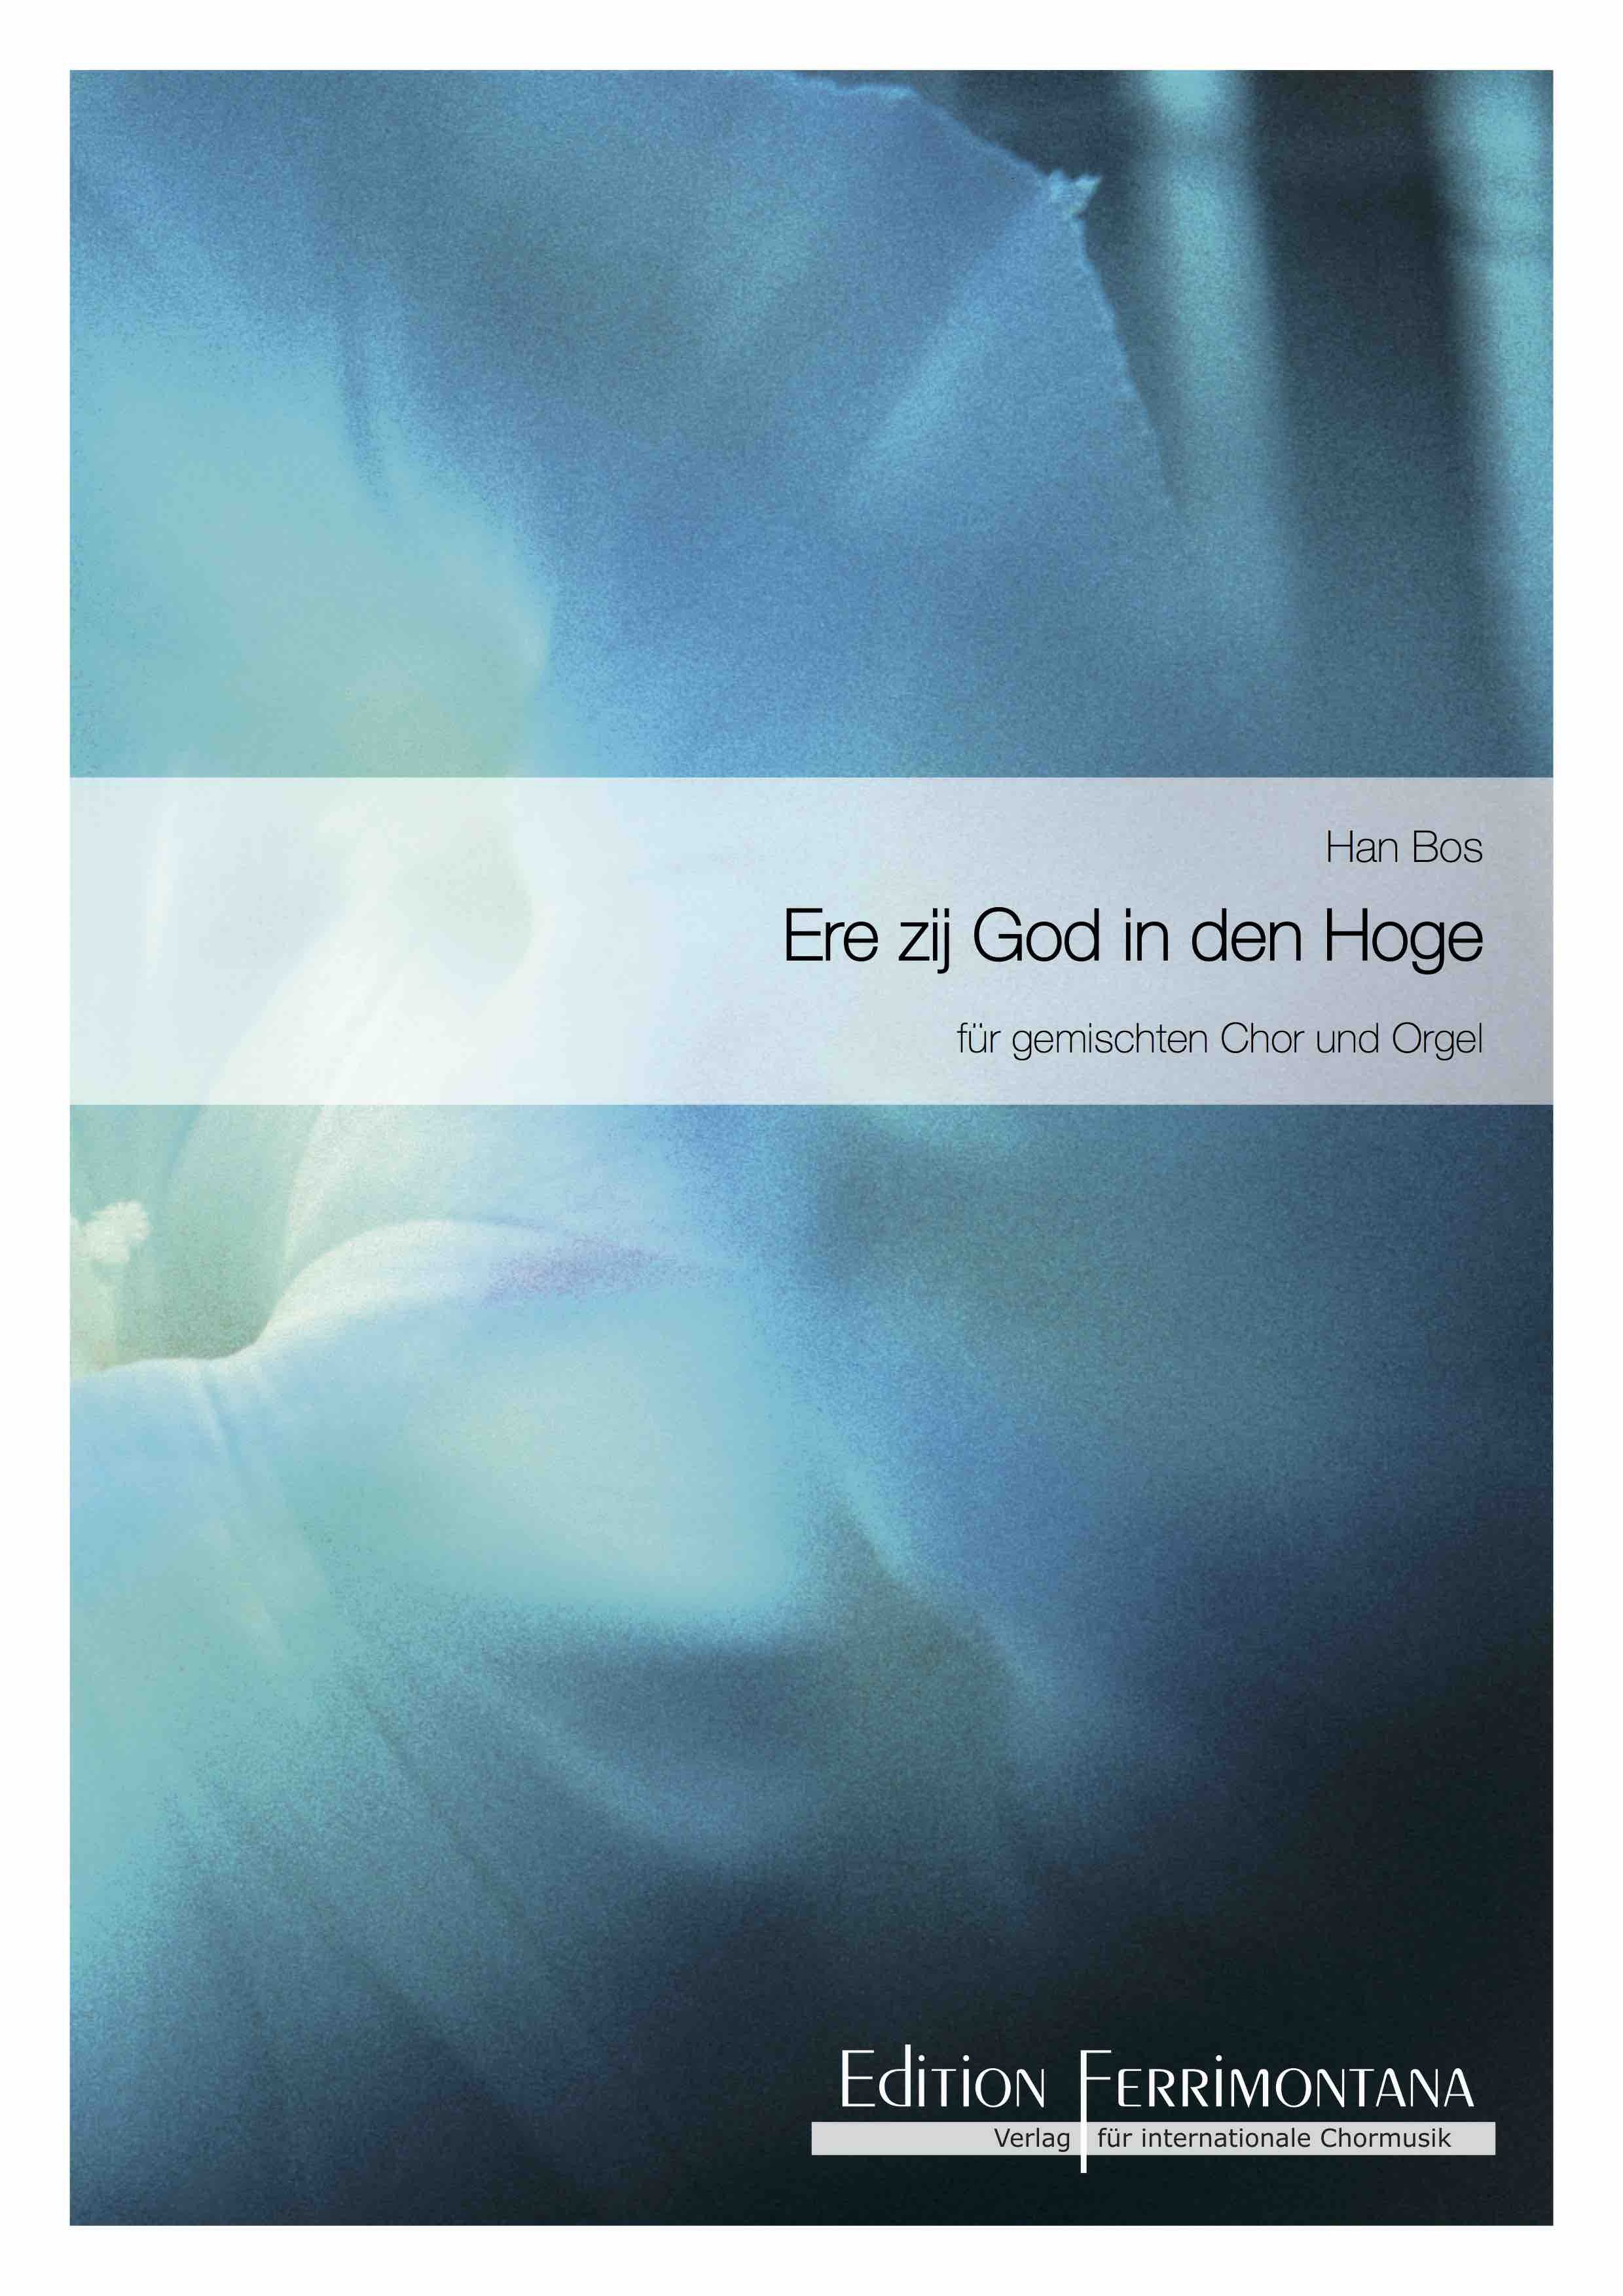 Han Bos: Ere zij God (SATB)